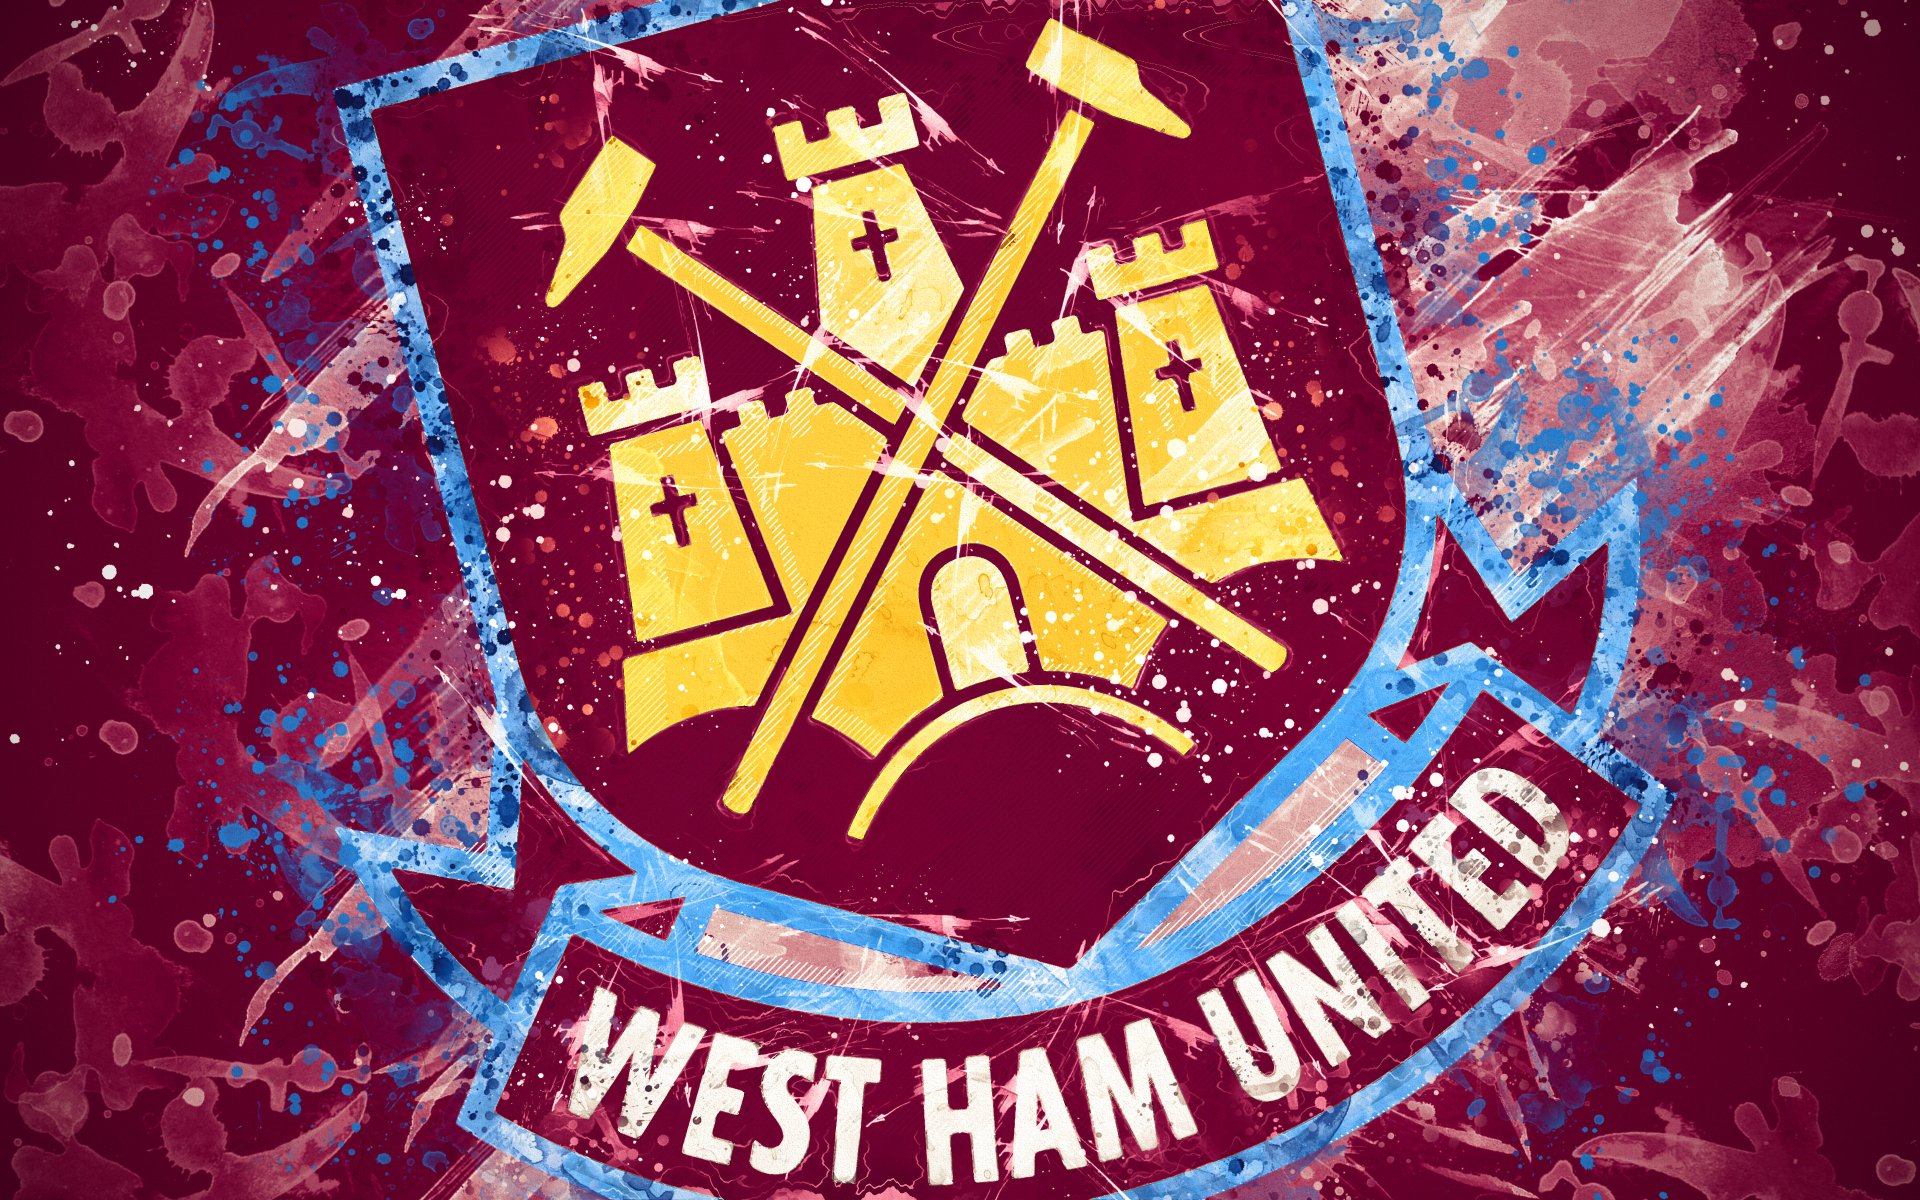 Sports West Ham United F.C. 4k Ultra HD Wallpaper